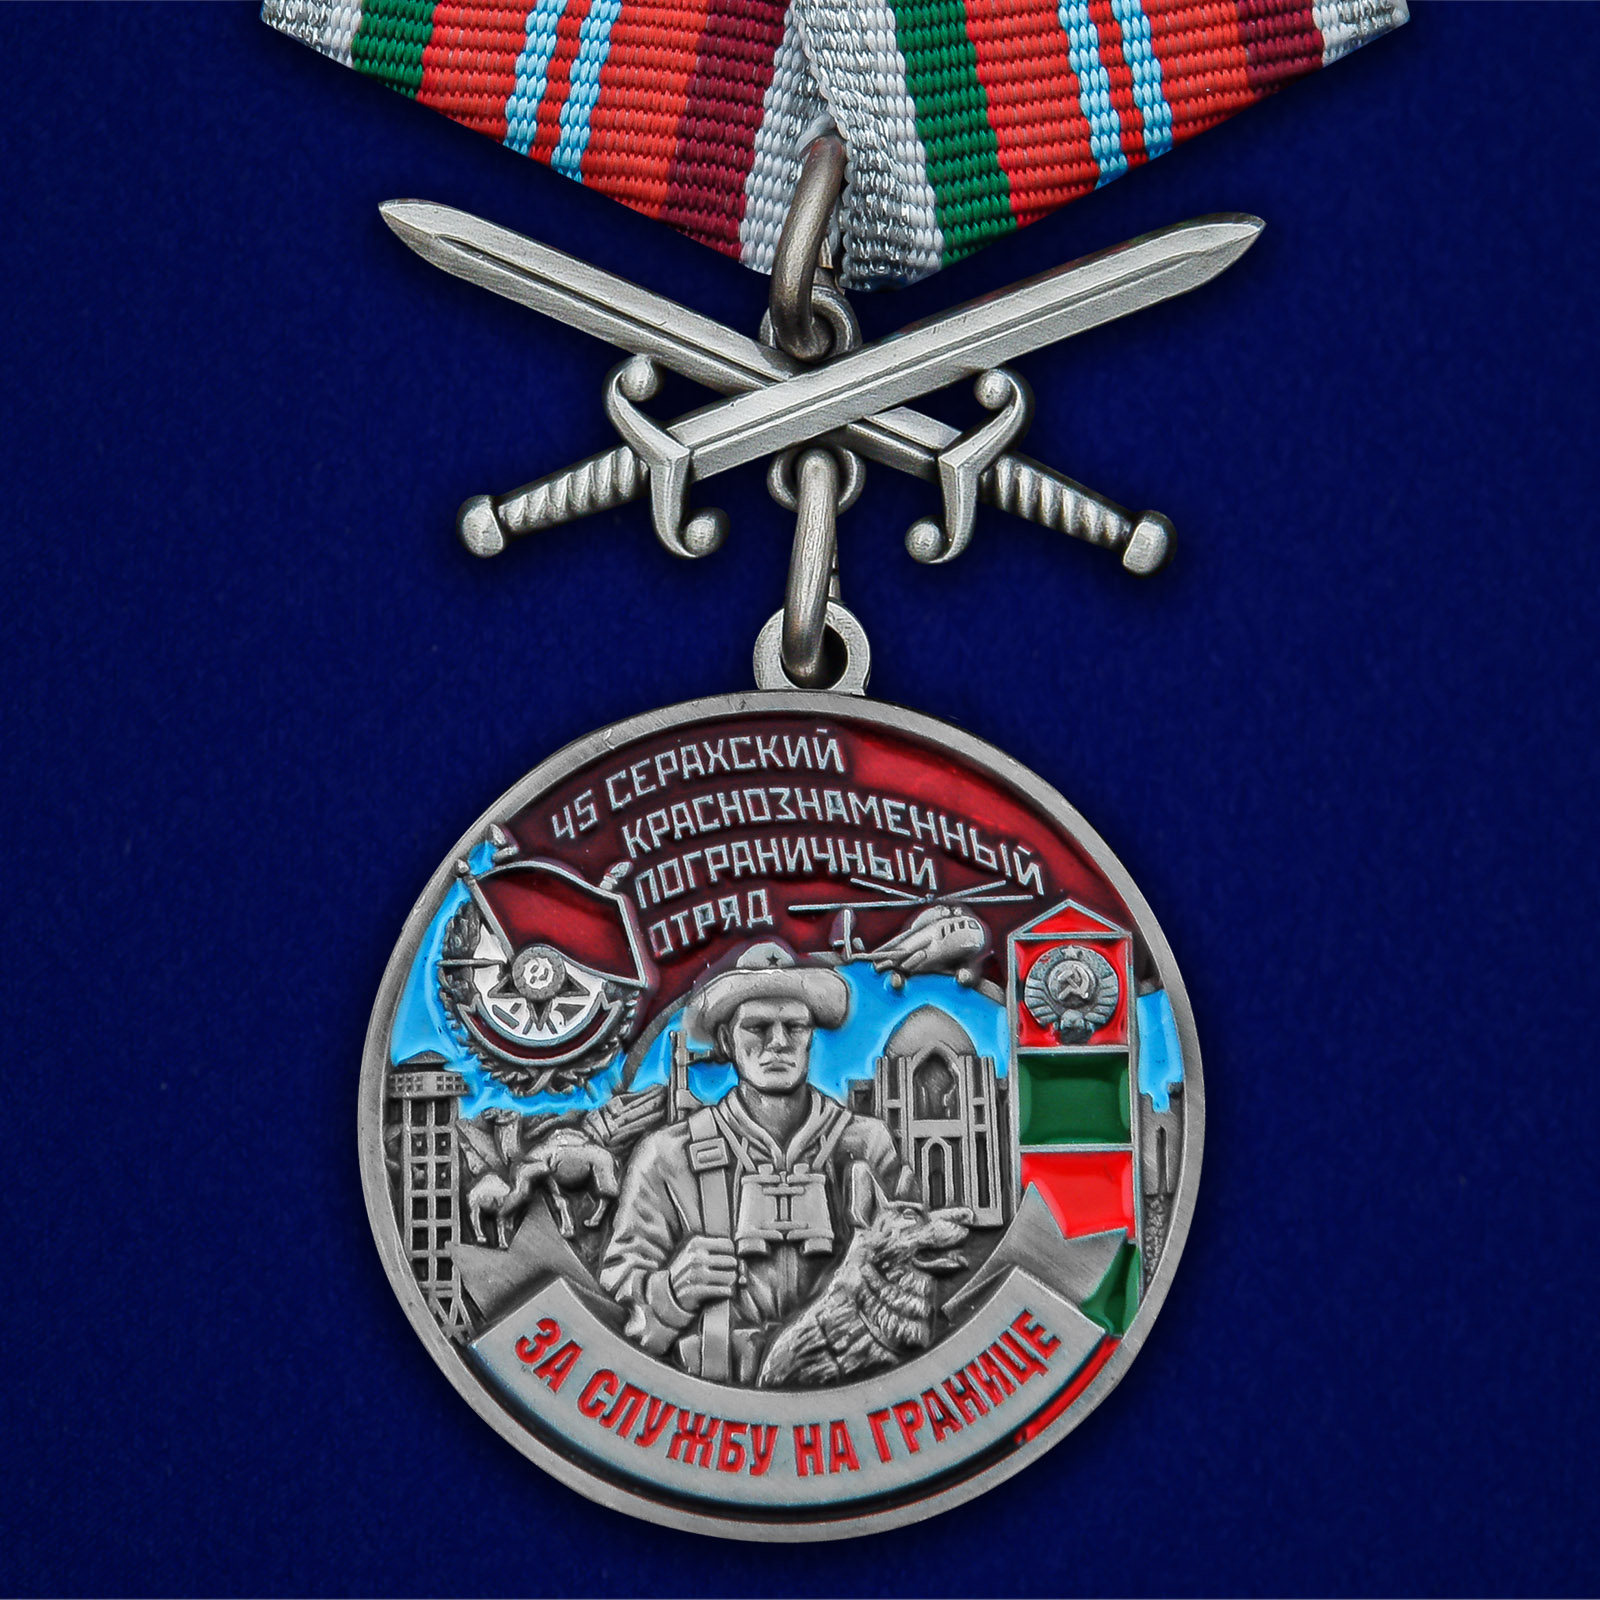 Купить медаль За службу в Серахском пограничном отряде выгодно